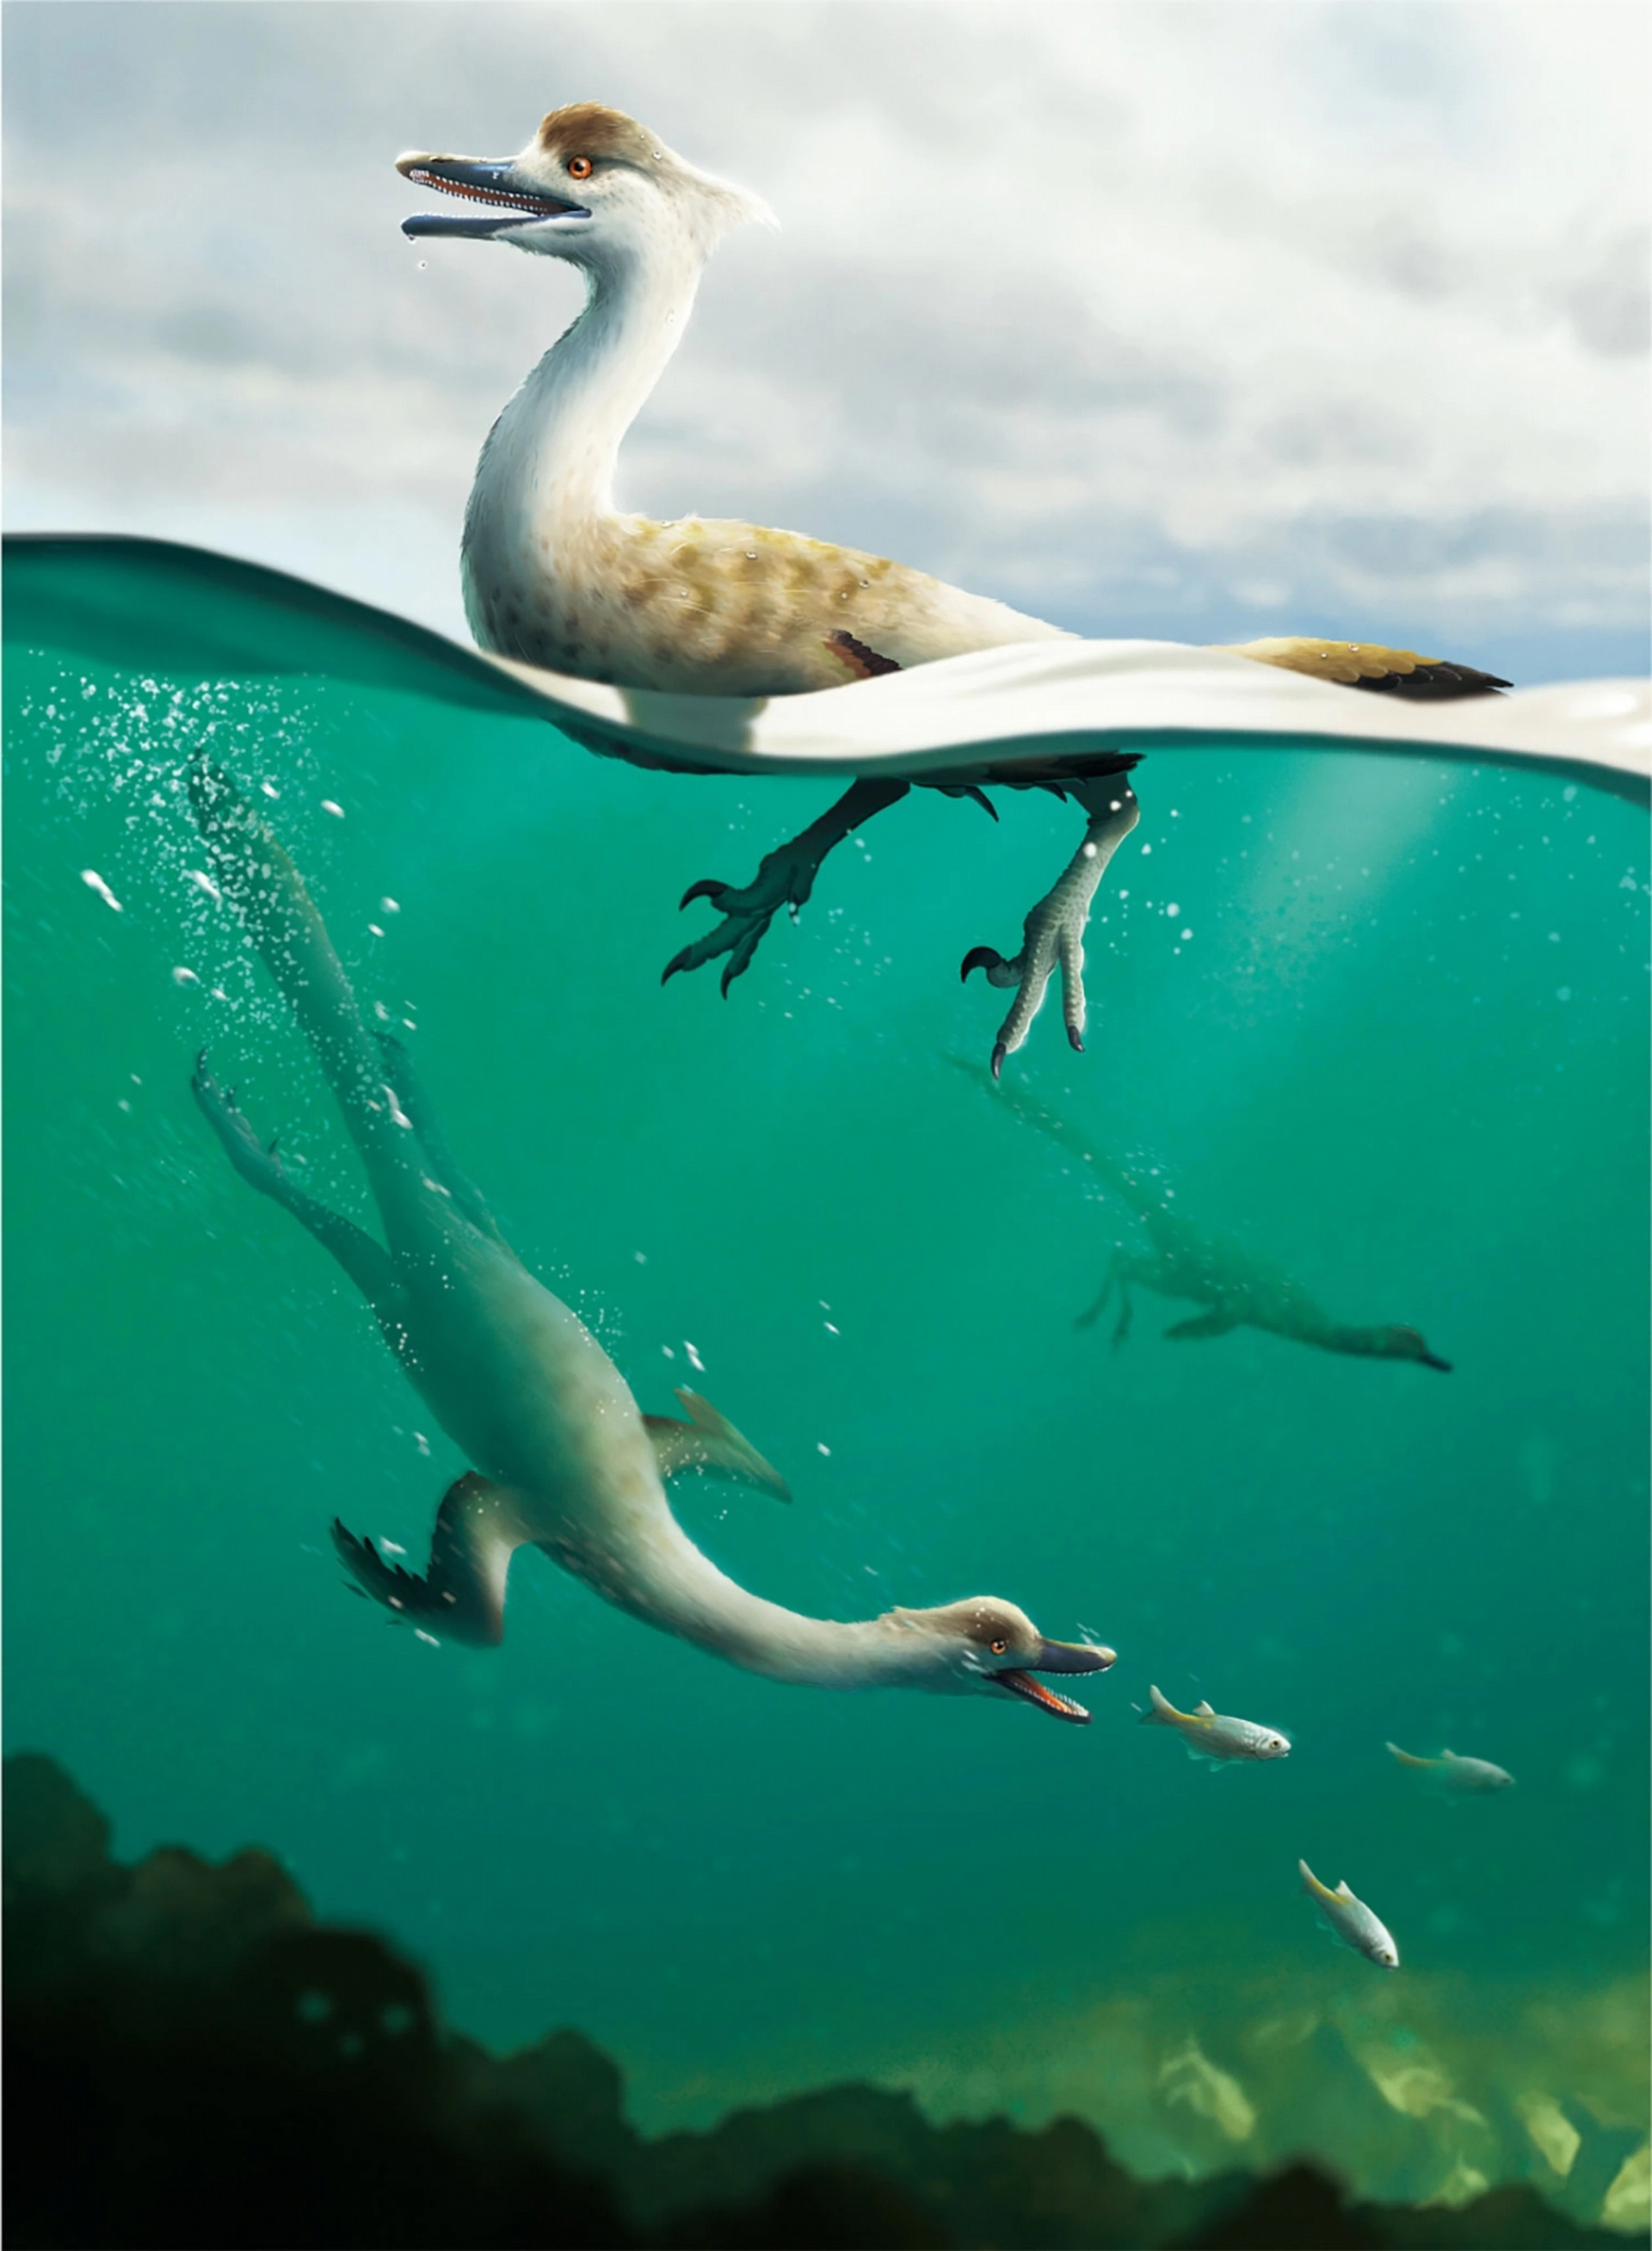 這幅重建圖描繪的是馳龍科──伶盜龍（Velociraptor）也屬於這類恐龍──的新物種：多齒泳獵龍（Natovenator polydontus），牠身上的適應特徵指向水下潛泳的能力。CREDIT: YUSIK CHOI